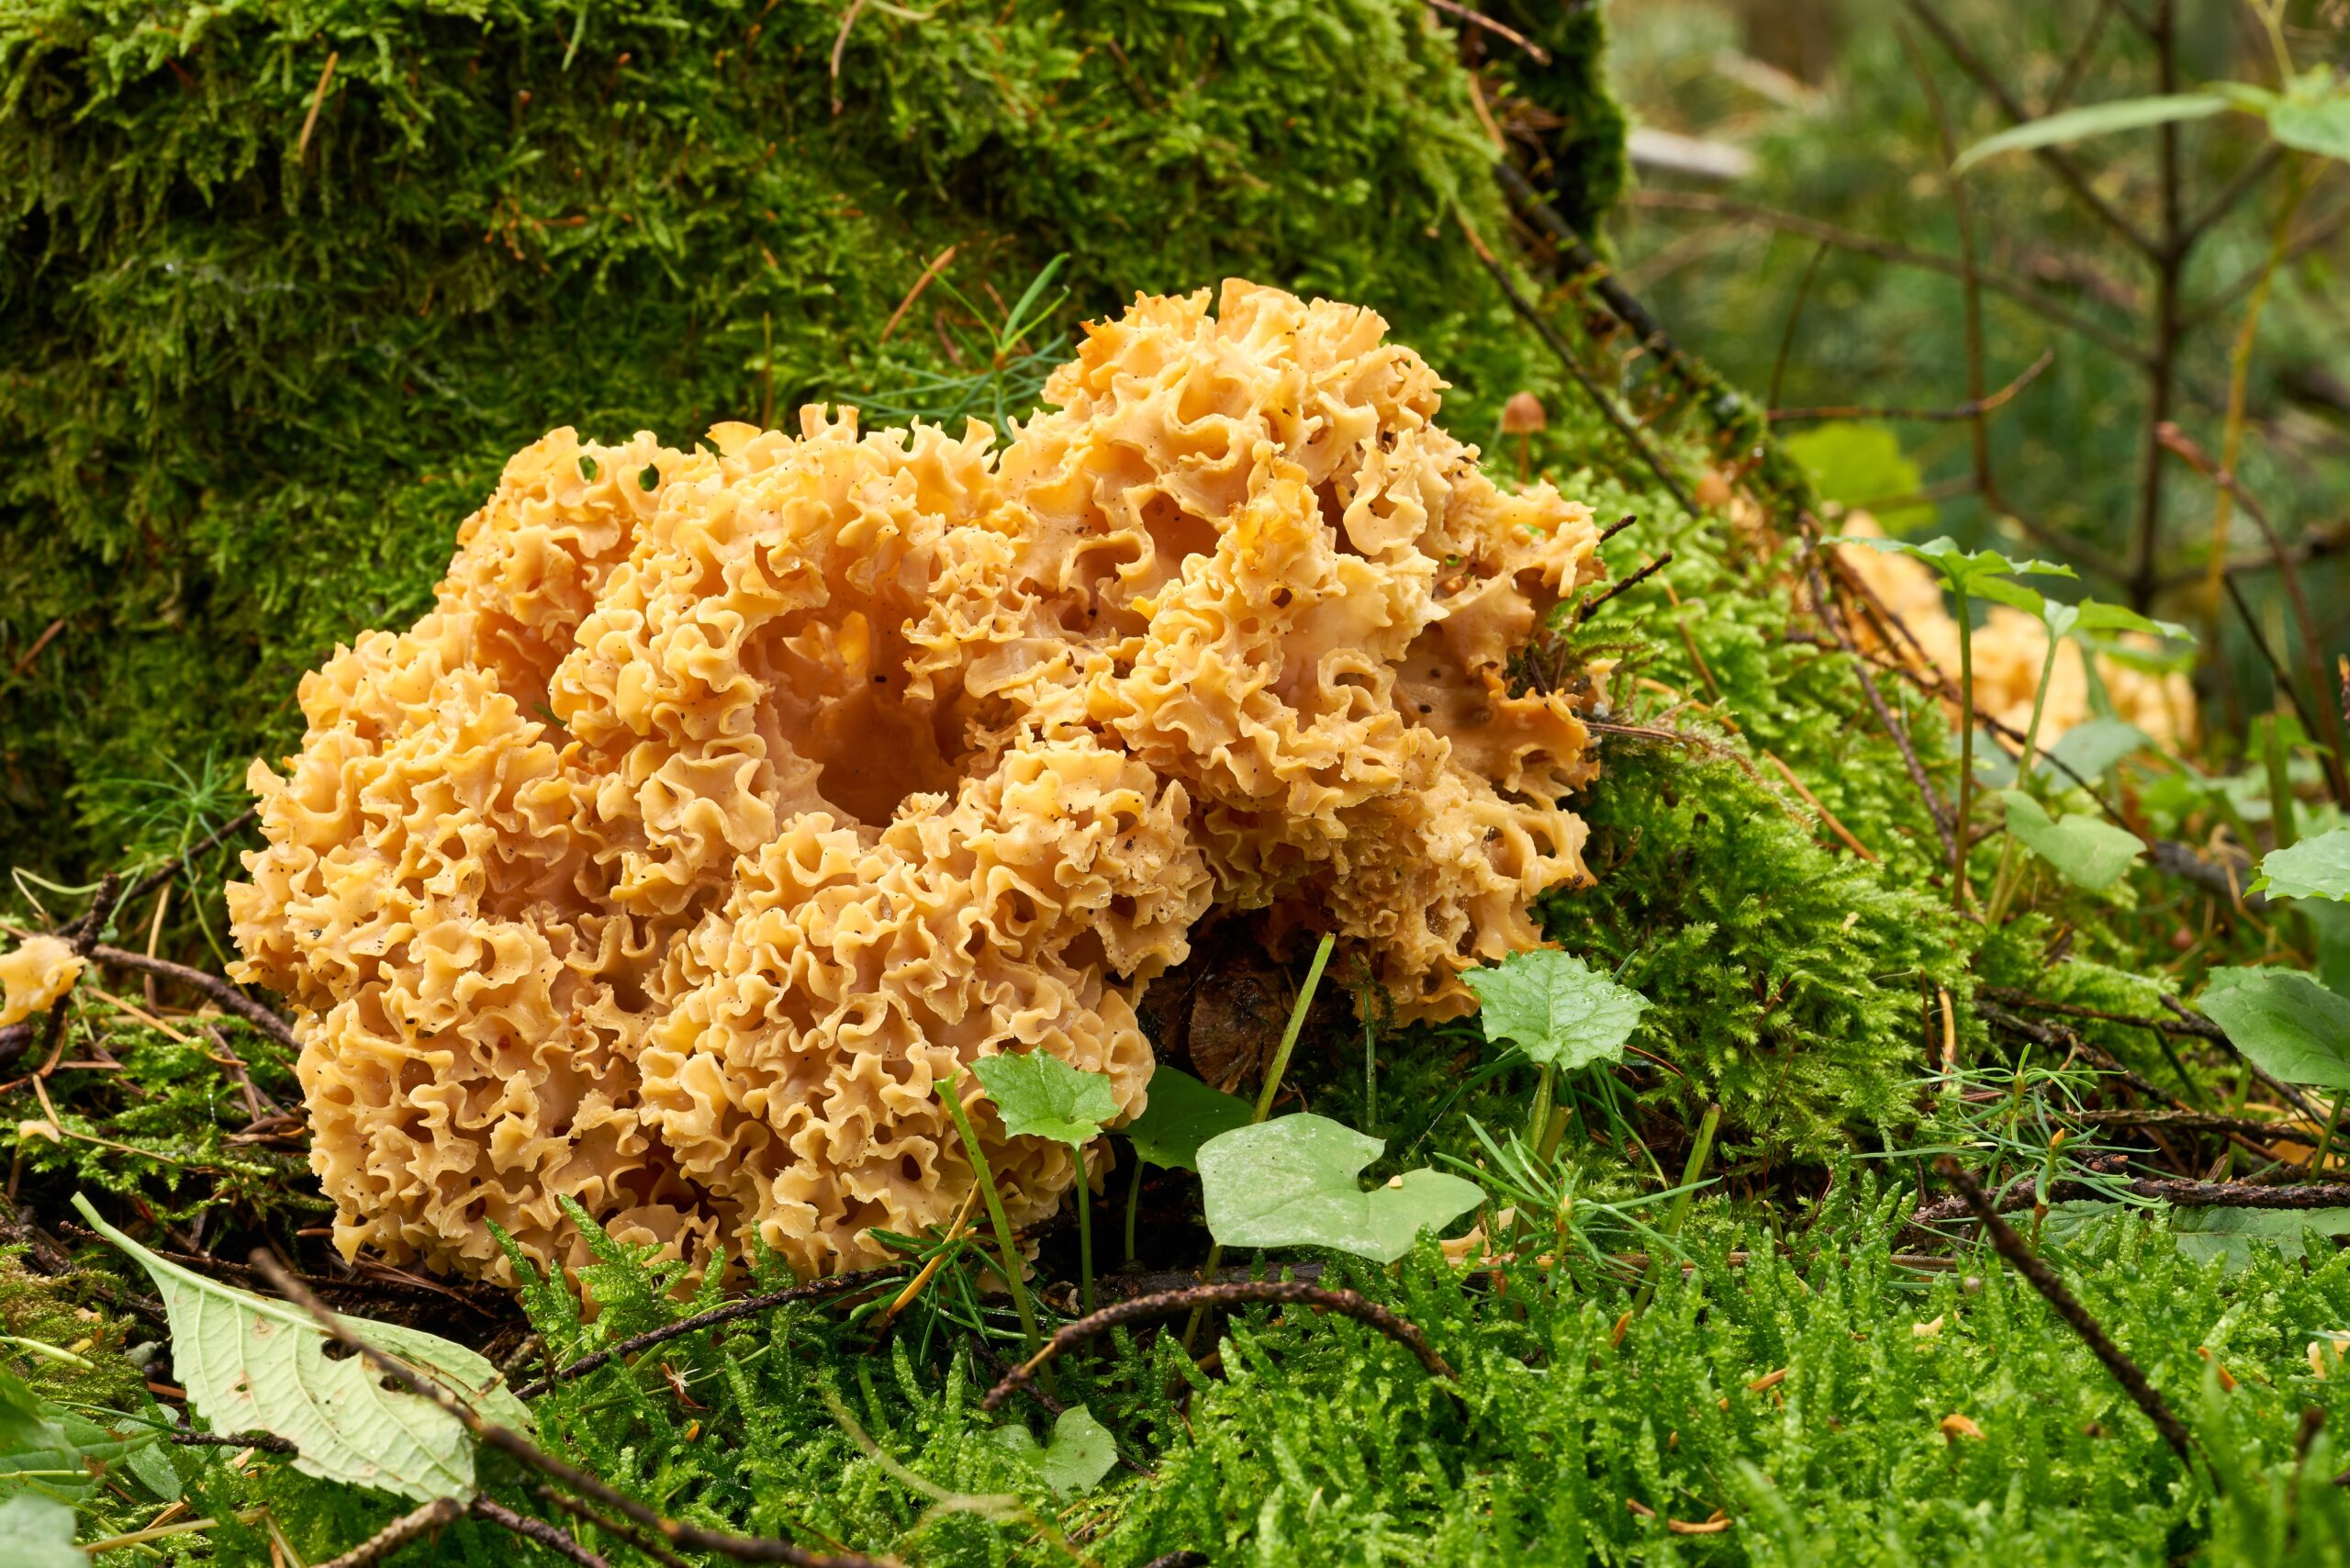 Pilze: Krause Glucke an einem abgestorbenen Baumstumpf im Wald